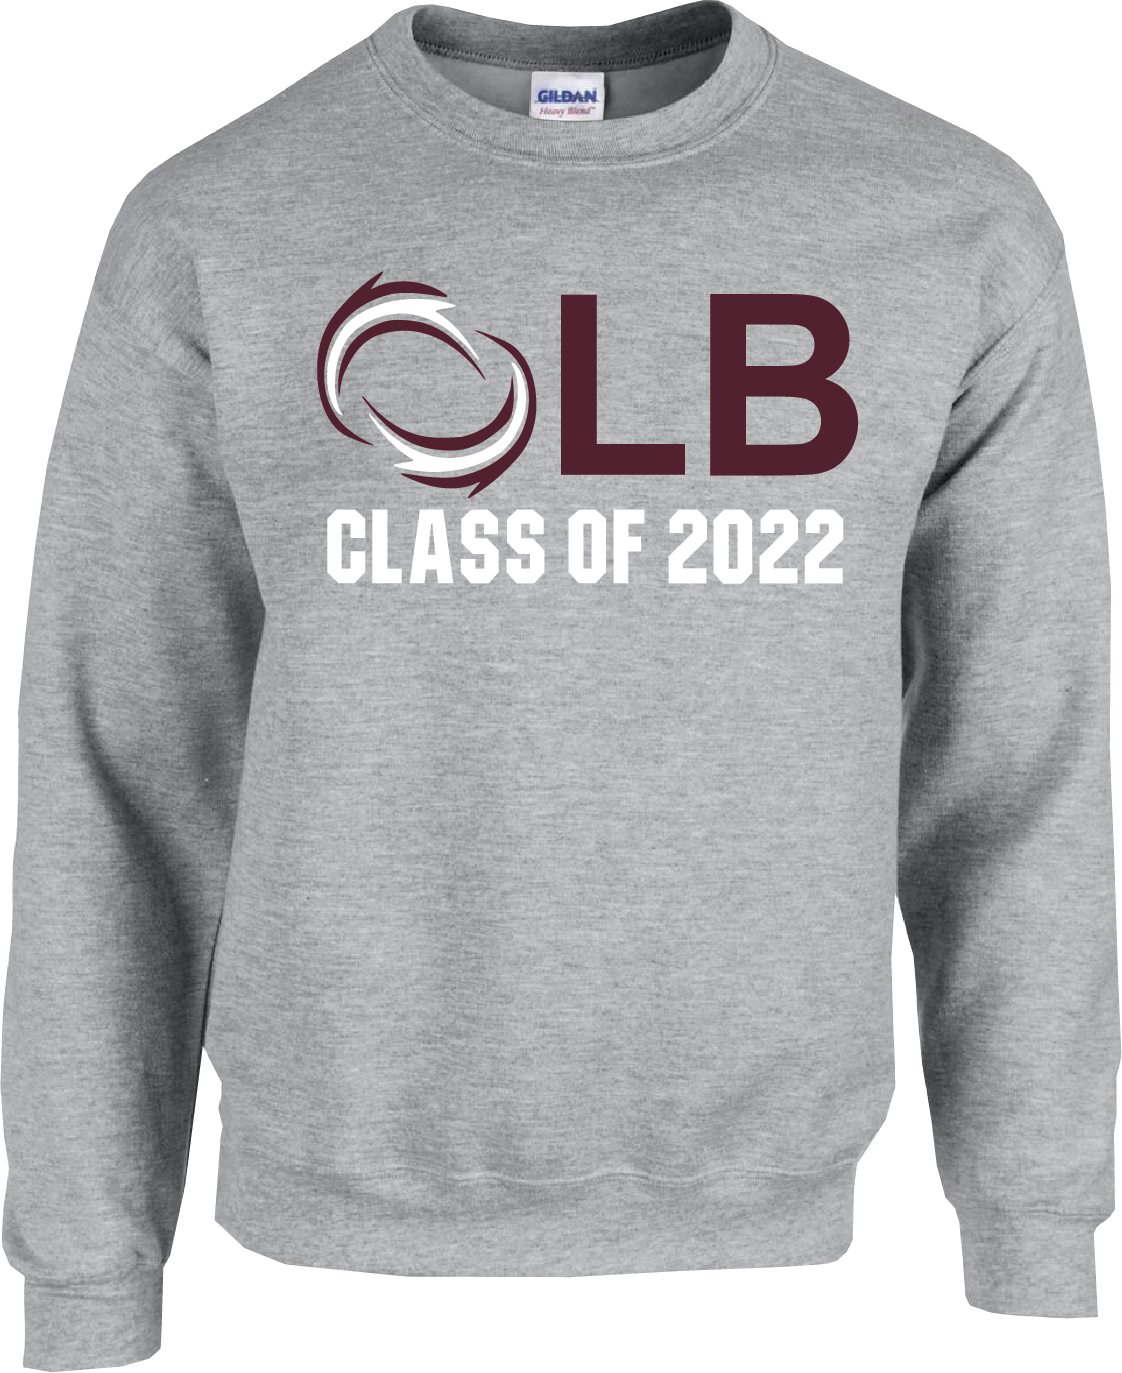 Class of 2022 Crewneck